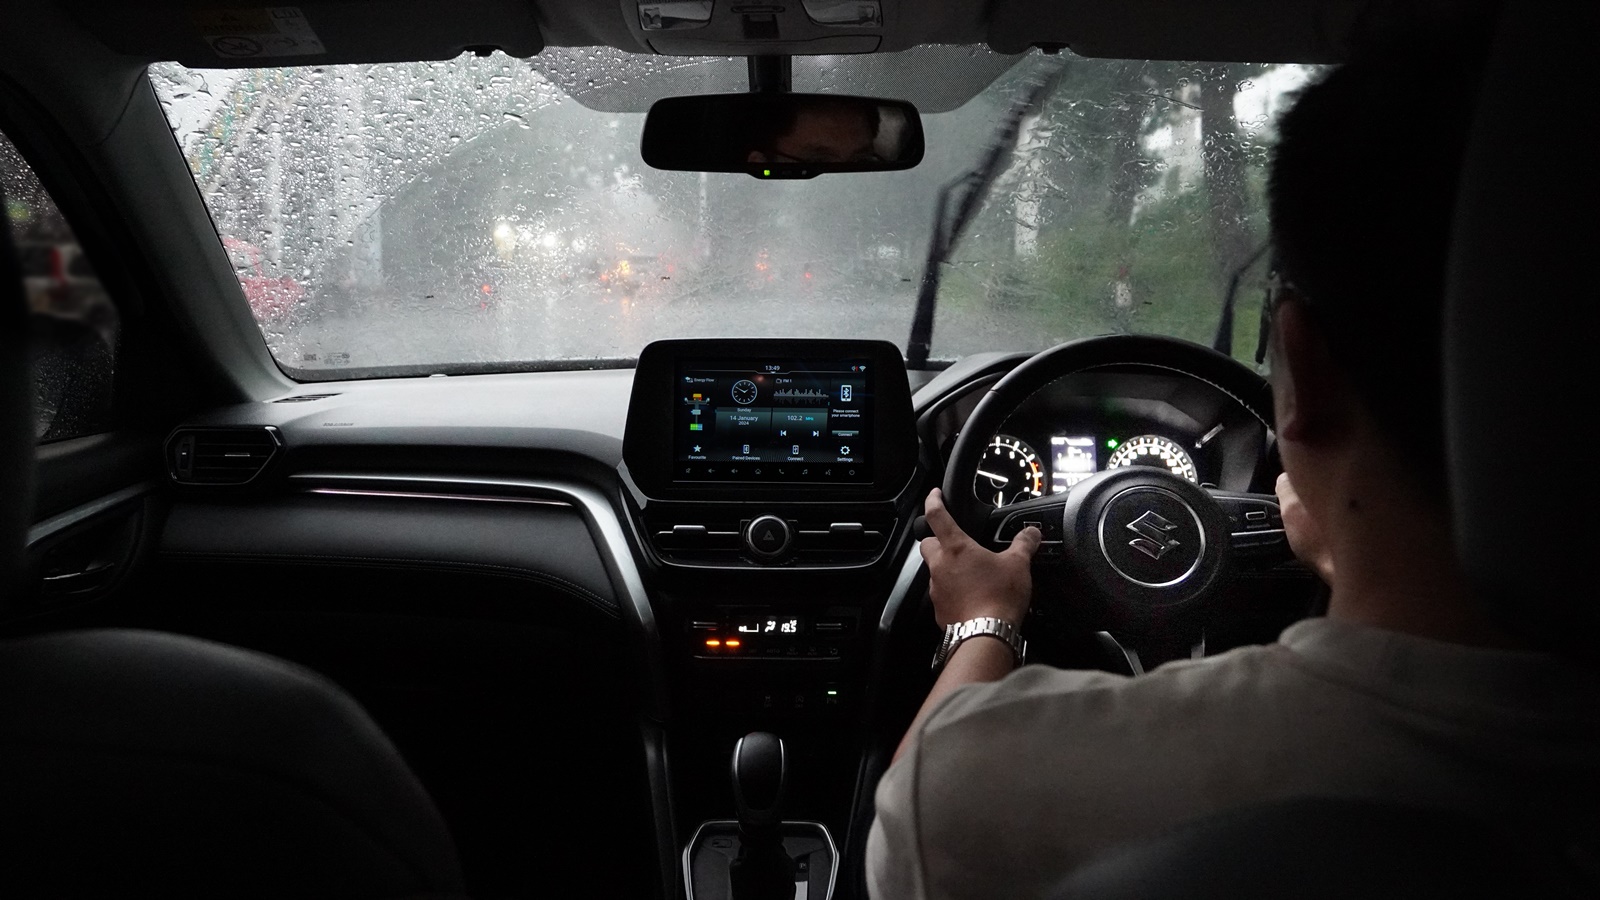 Kenali 4 Fitur di Suzuki Grand Vitara, Berkendara saat Musim Hujan Semakin Nyaman Tanpa Rasa Khawatir